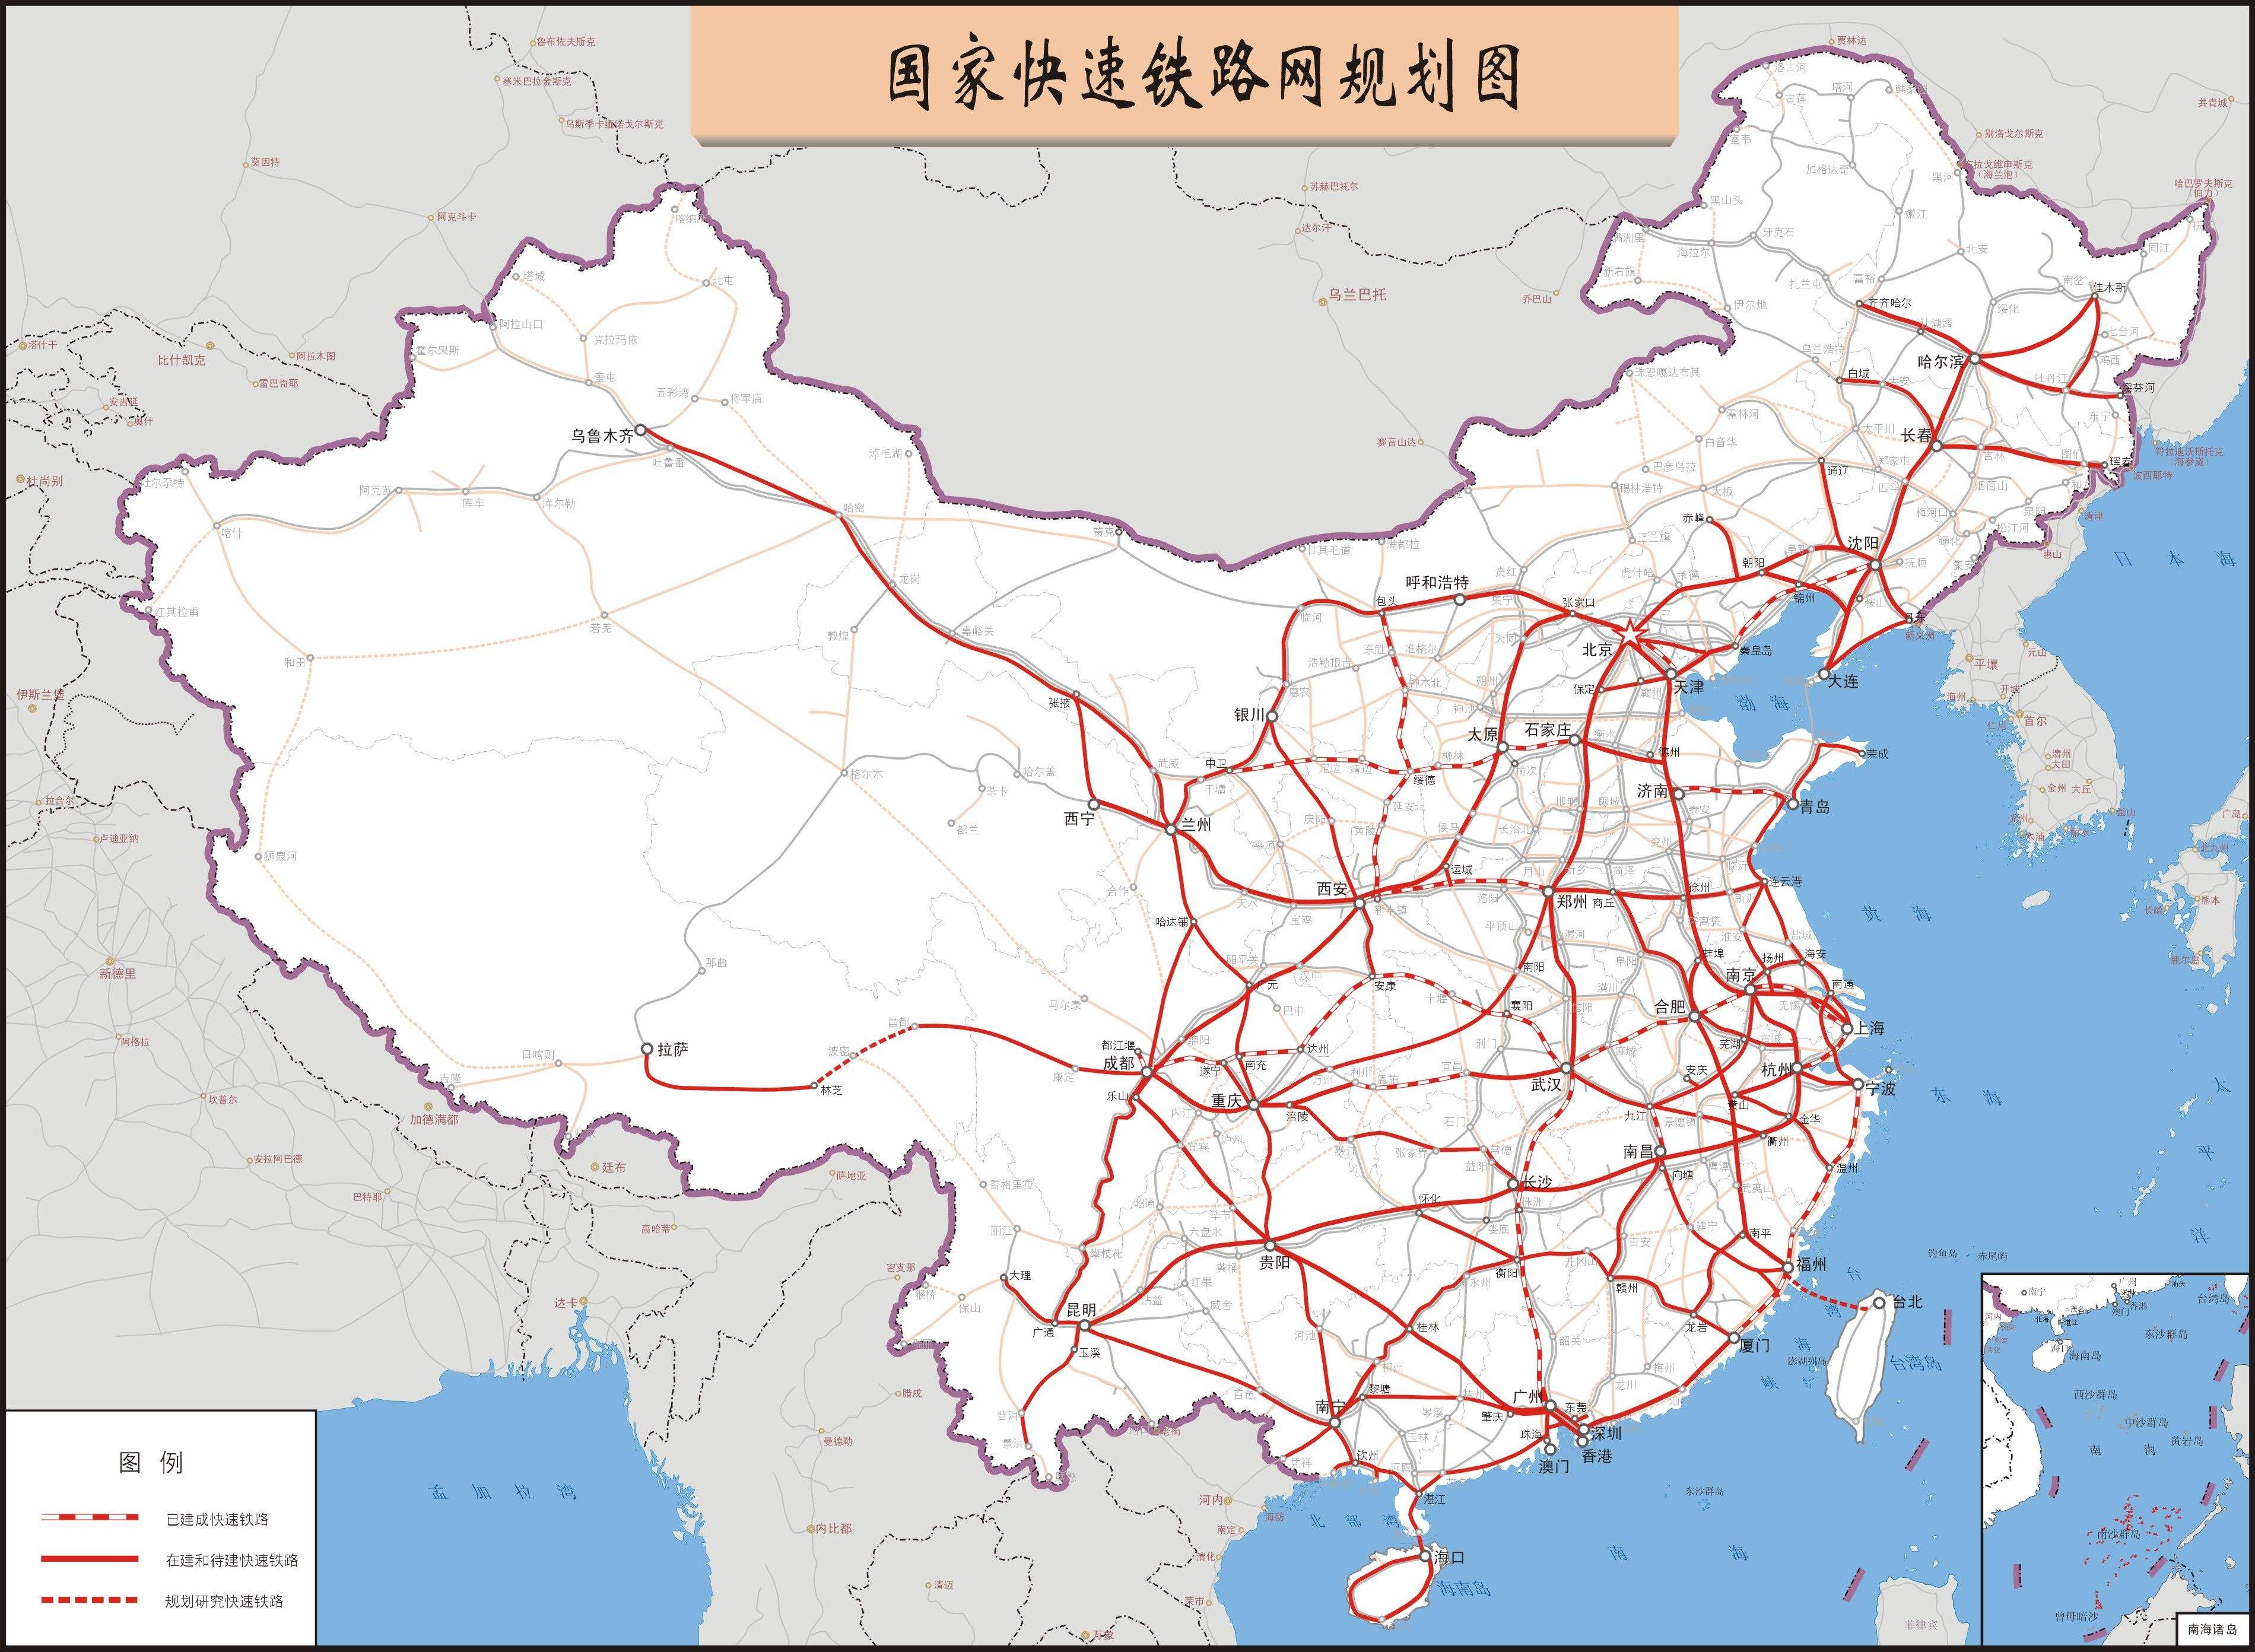 中国快速铁路规划图(来源:百度图库)